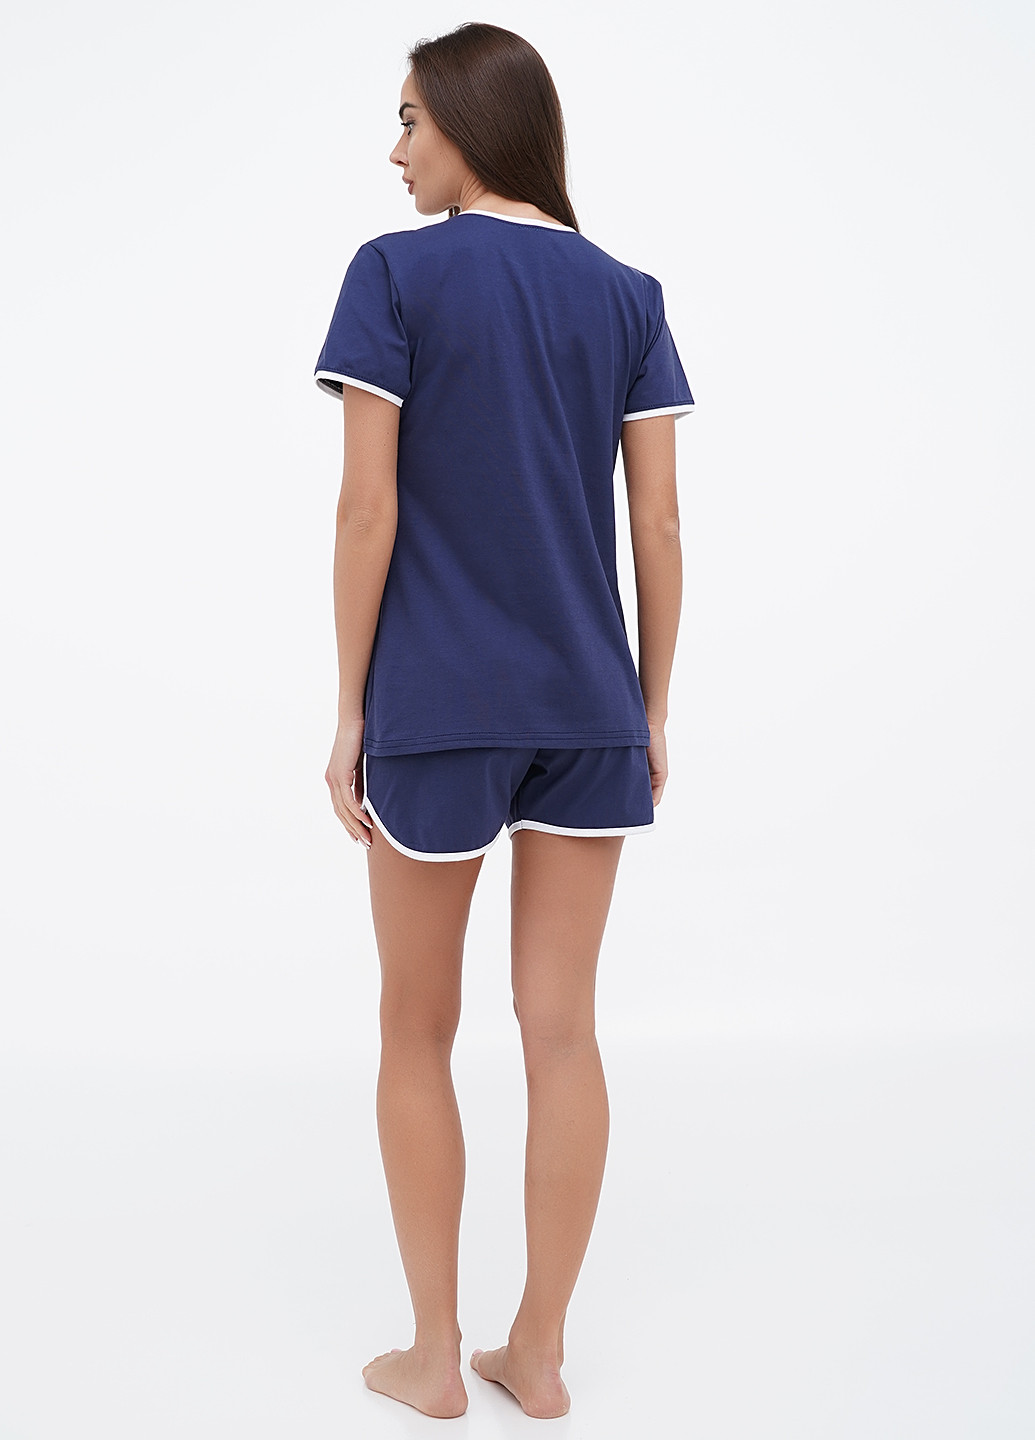 Синяя всесезон пижама (футболка, шорты) футболка + шорты Lucci